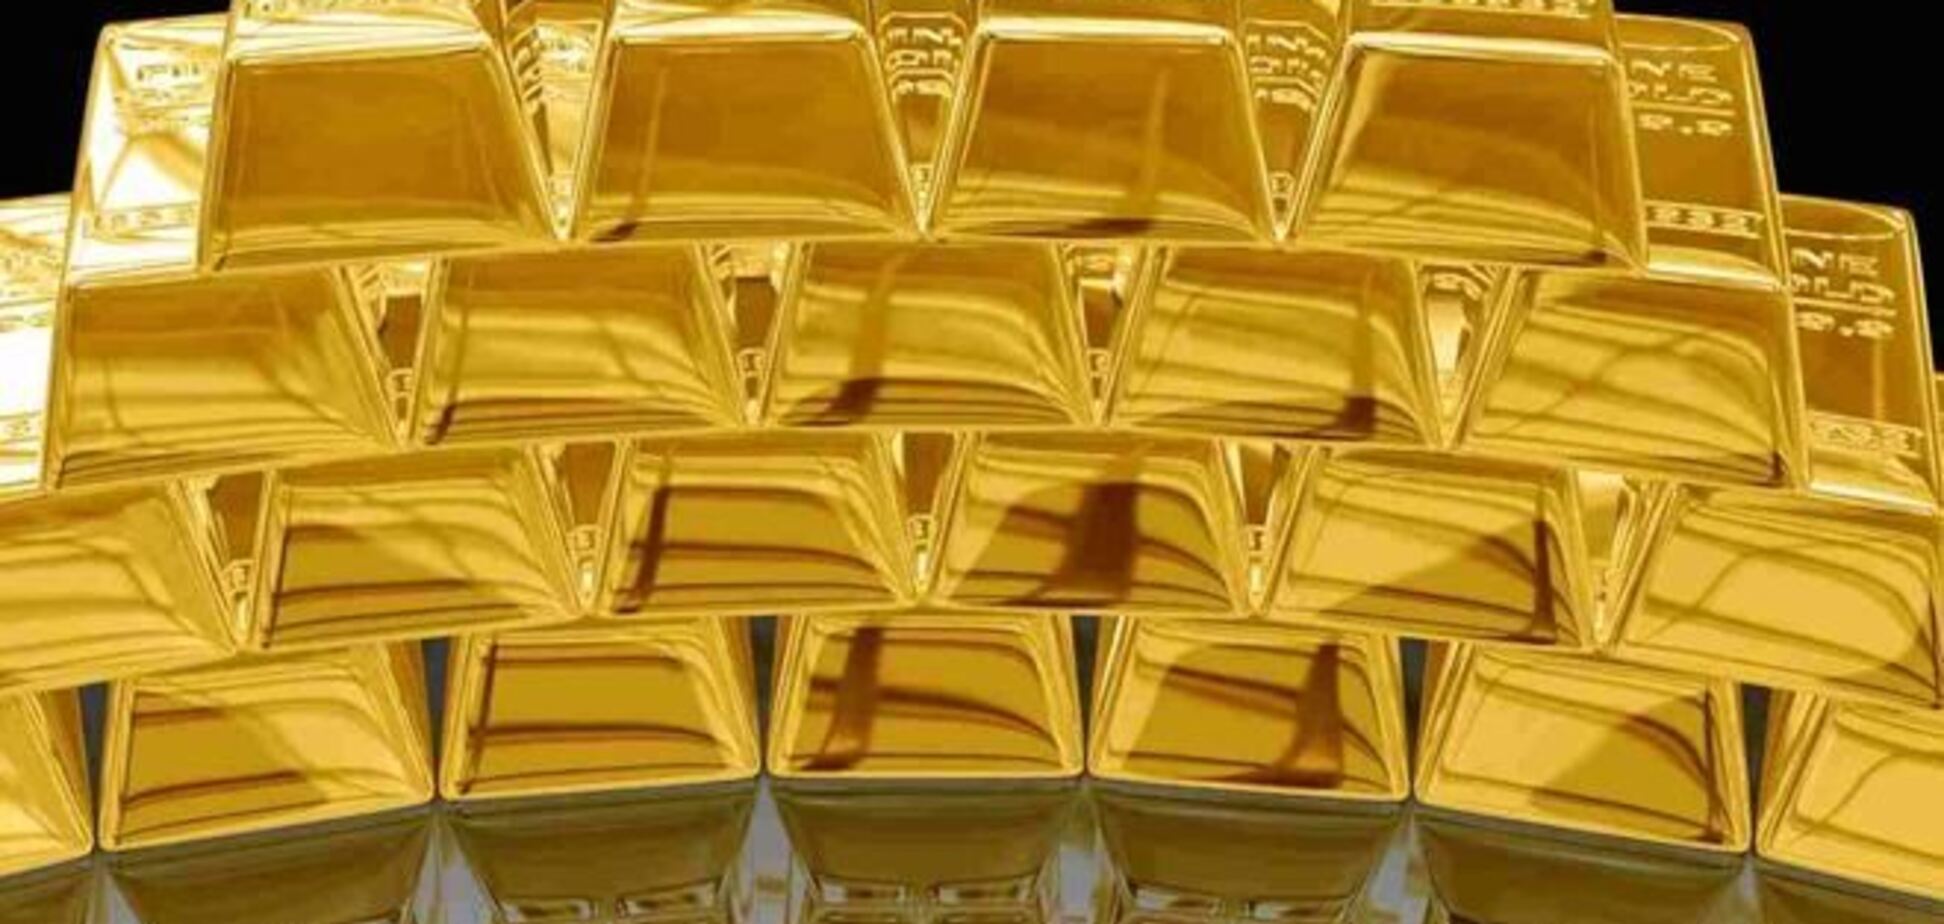 НБУ понизил золото в цене, 22 ноября 2013